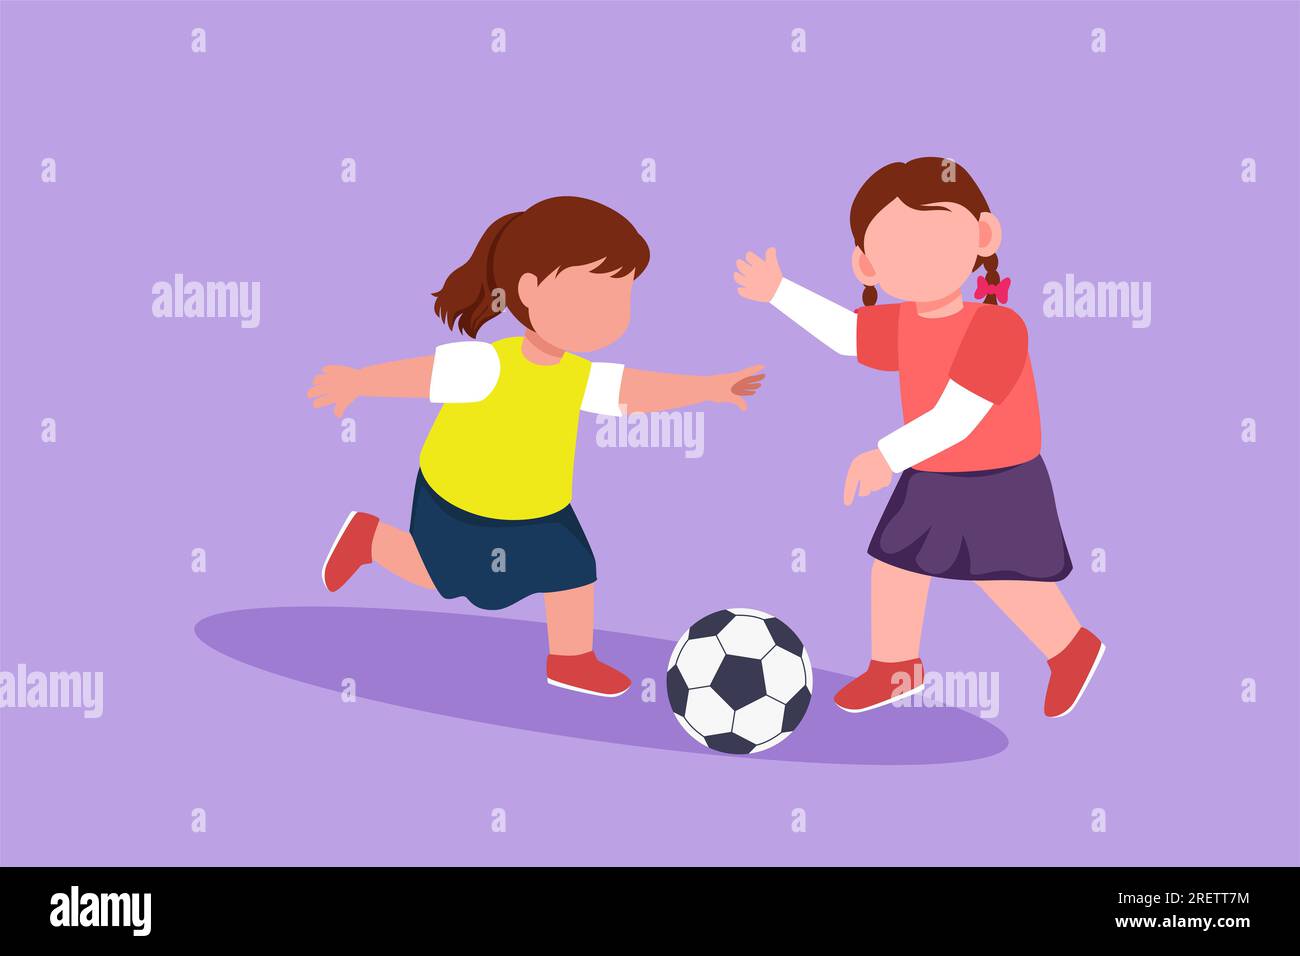 Eine Figur, die kleine Mädchen beim Fußball malt. Zwei glückliche Kinder, die auf dem Schulspielplatz Sport treiben. Lächelnde Kinder kicken Ball für Foo Stockfoto